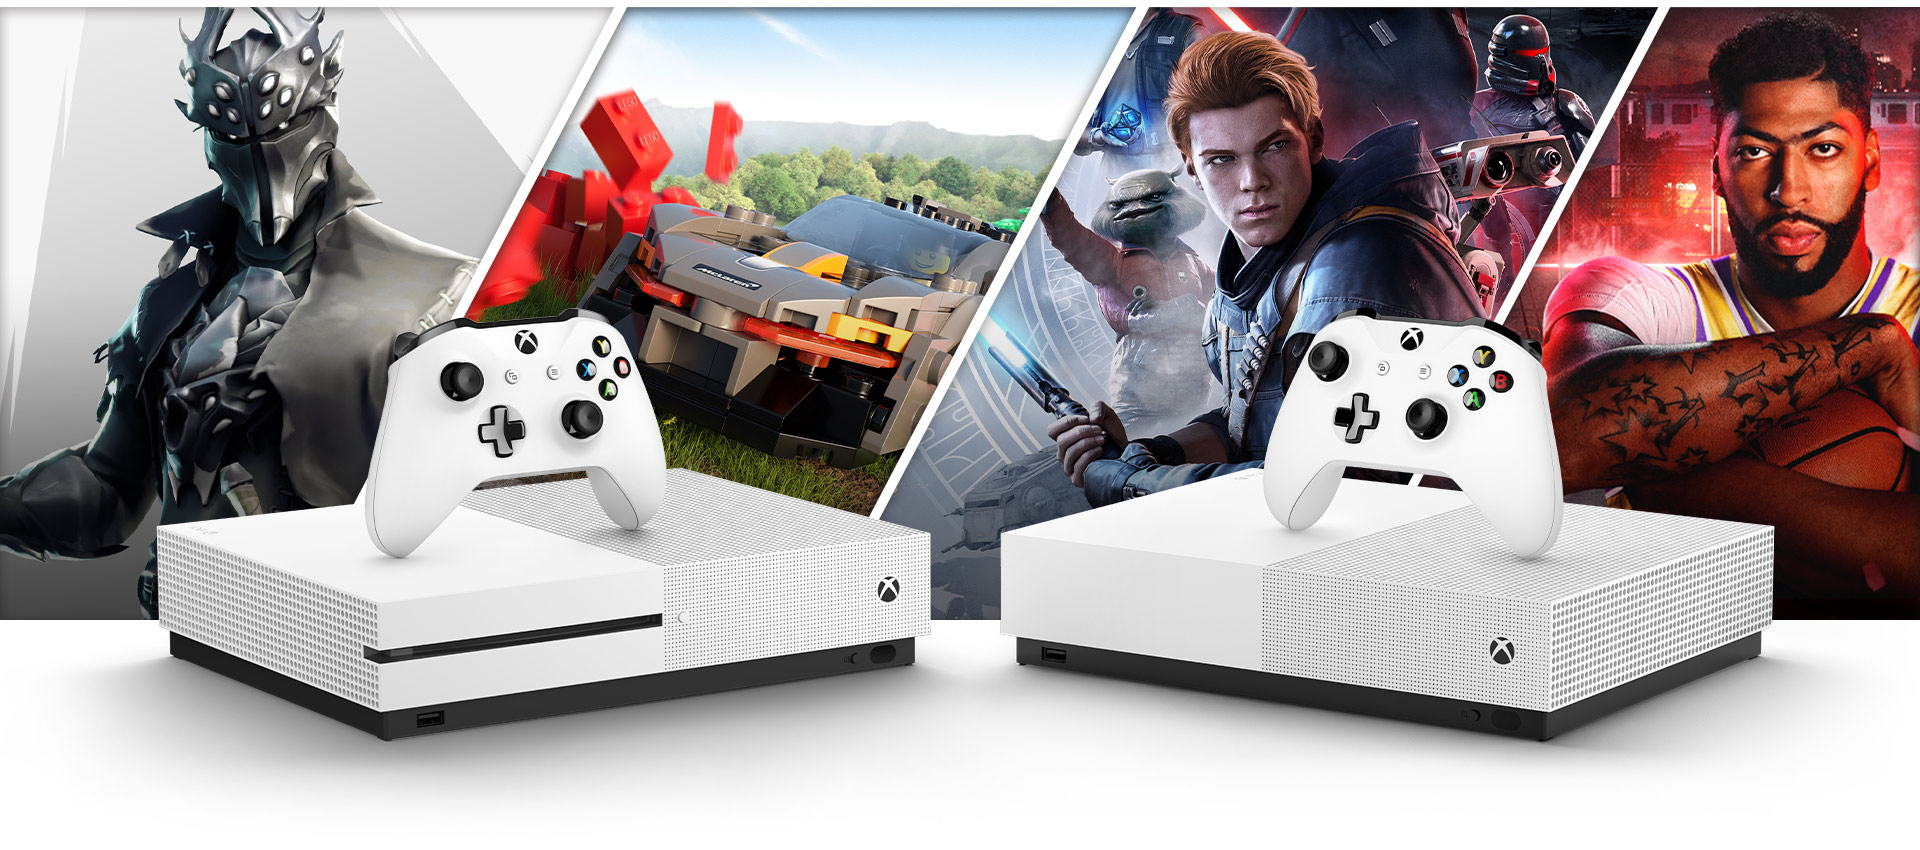 Imagens de Fortnite, Forza Horizon 4, Star Wars Jedi Fallen Order e NBA 2K20 atrás de um Xbox One S e de um Xbox One S All Digital Edition